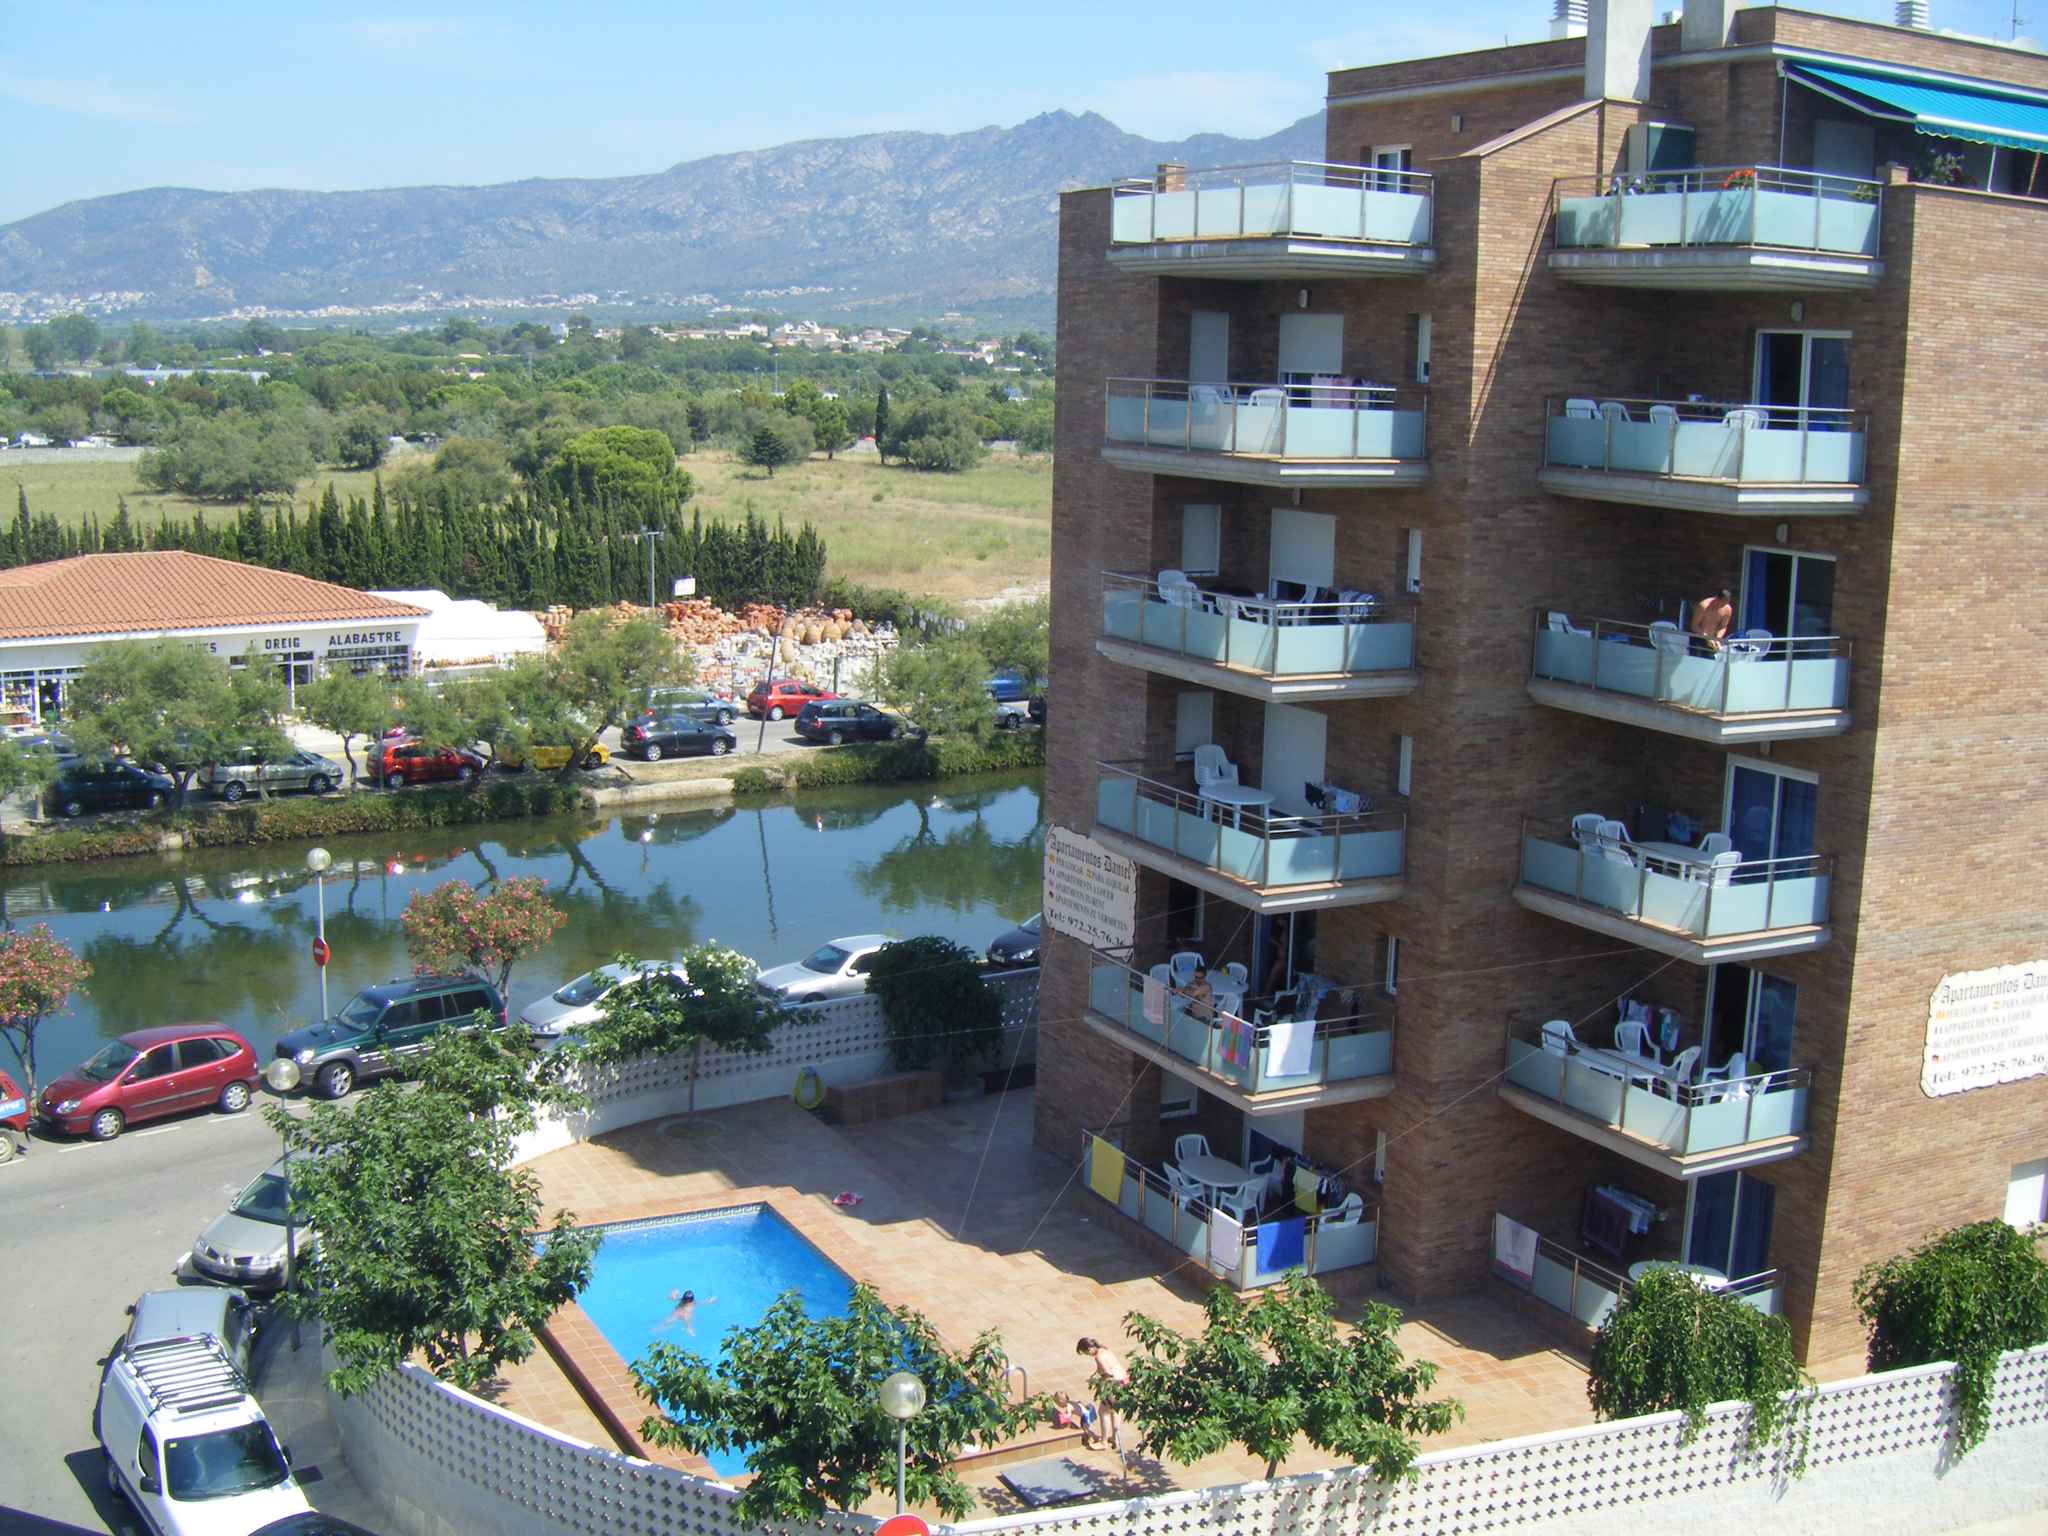 Ferienwohnung mit Pool (838286), Rosas (Costa Brava), Costa Brava, Katalonien, Spanien, Bild 2